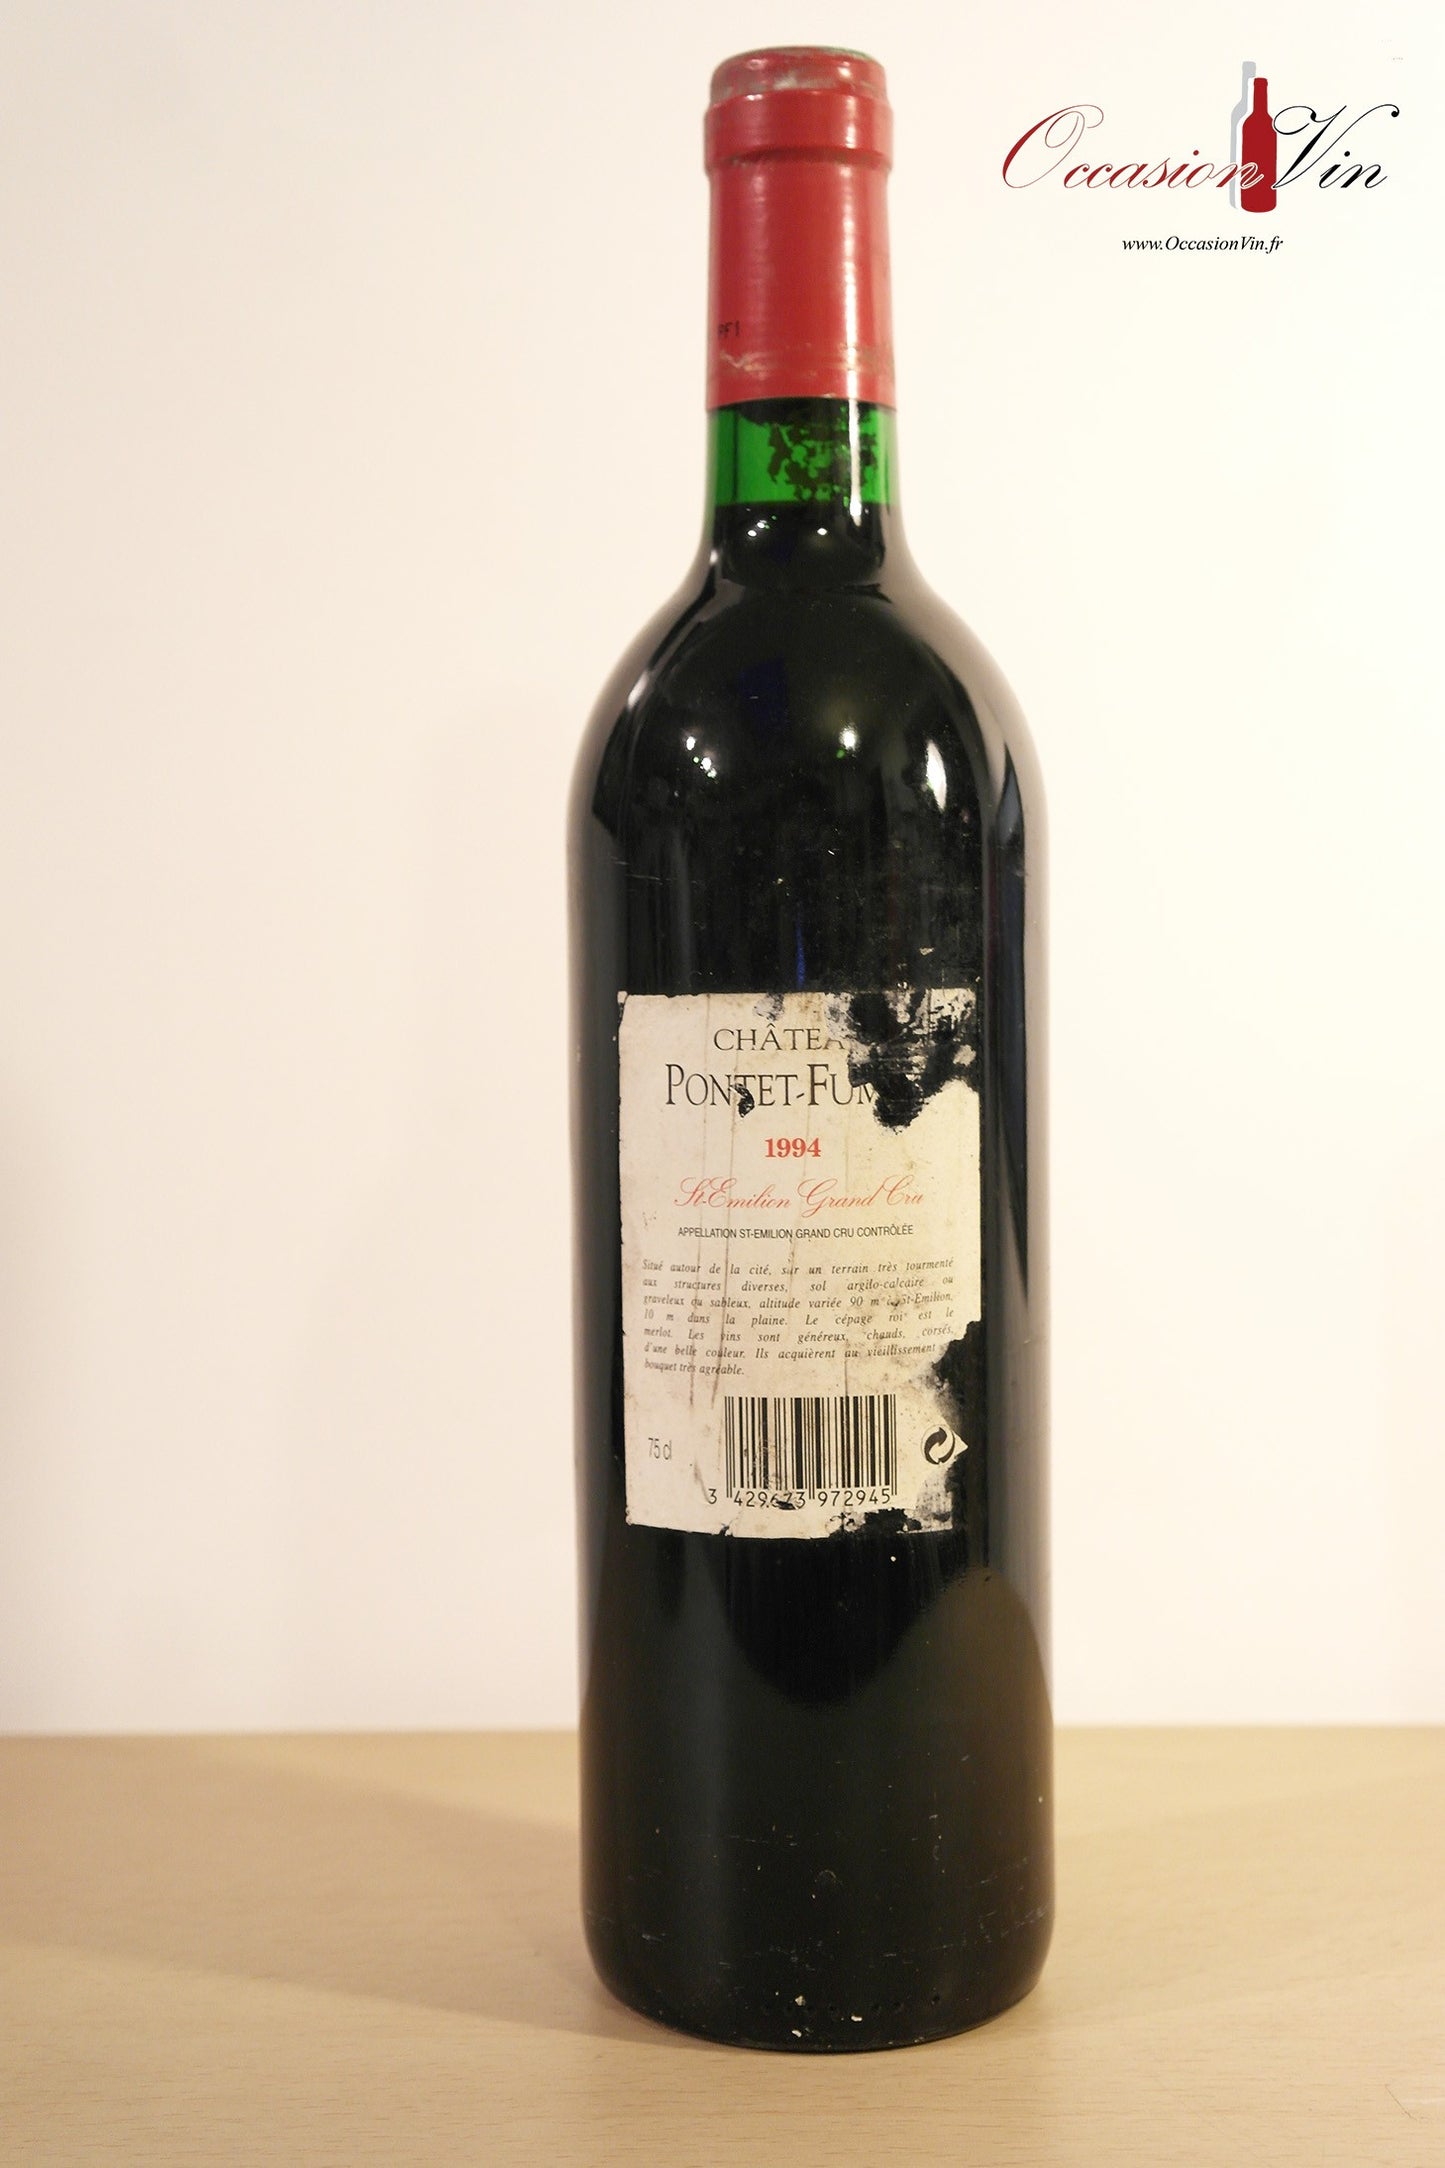 Château Pontet-Fumet Vin 1994